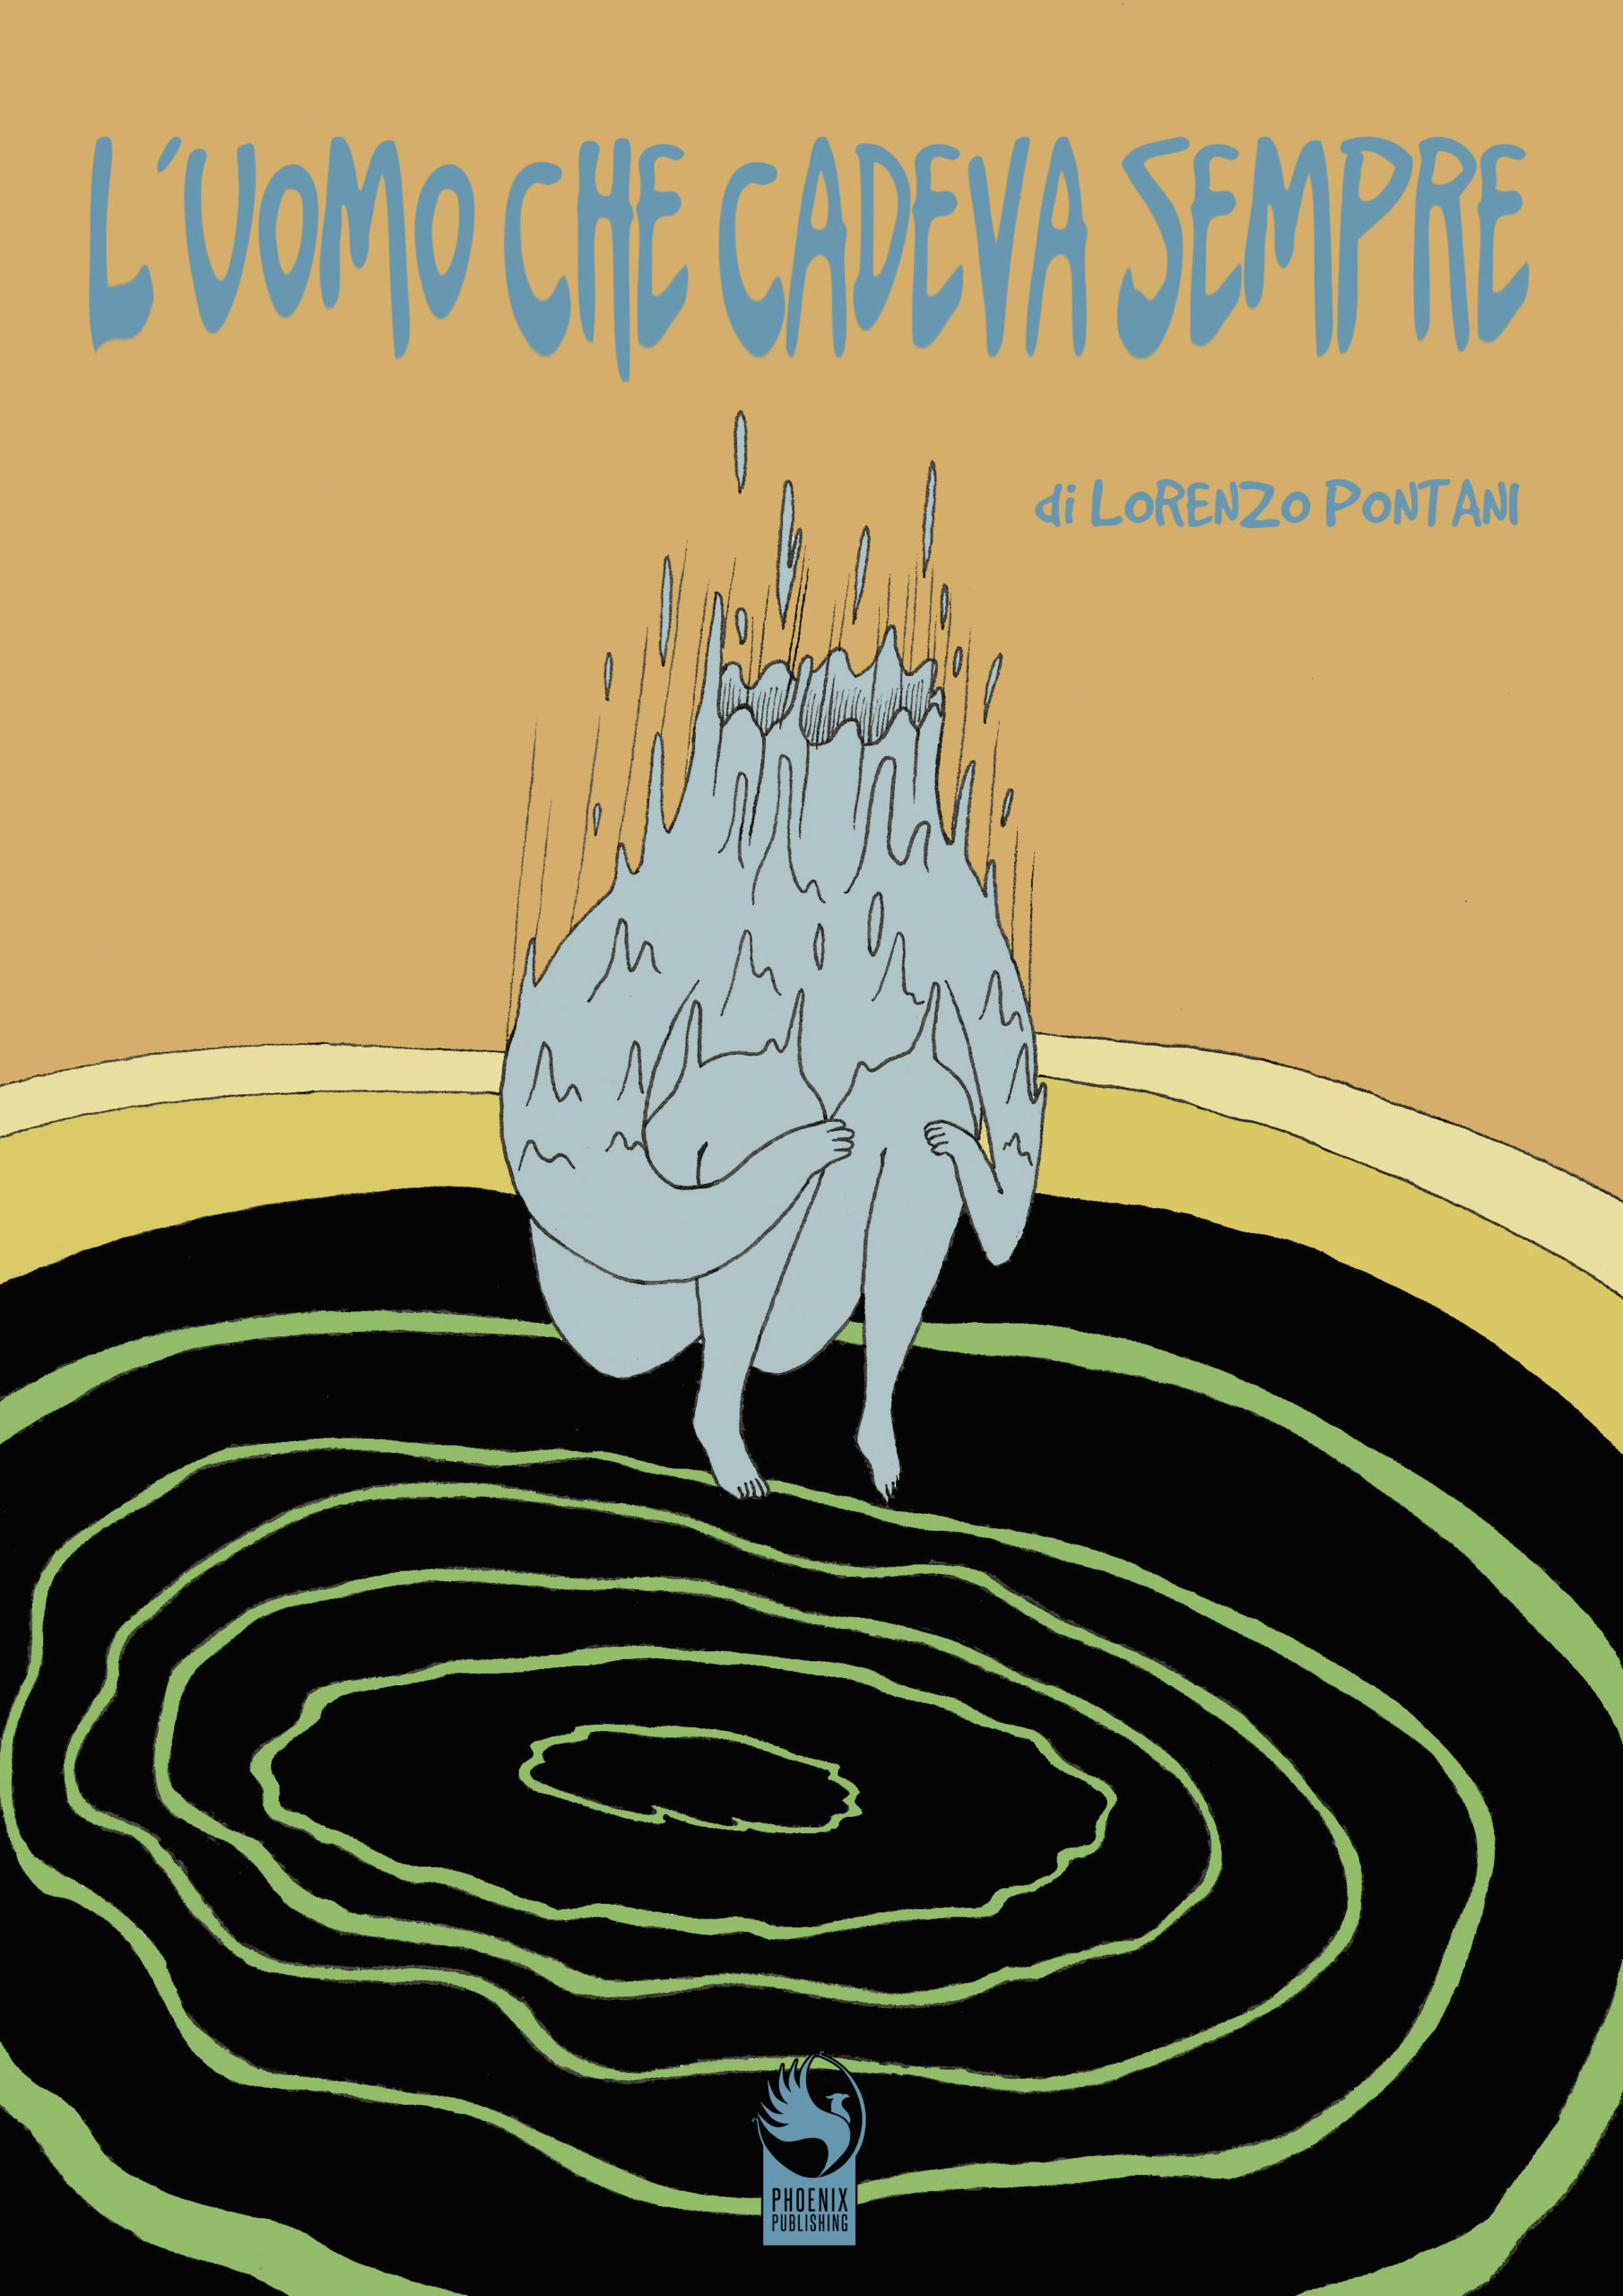 In libreria e fumetteria, il coloratissimo e surreale romanzo grafico di Lorenzo Pontani “L’uomo che cadeva sempre”, Phoenix Publishing